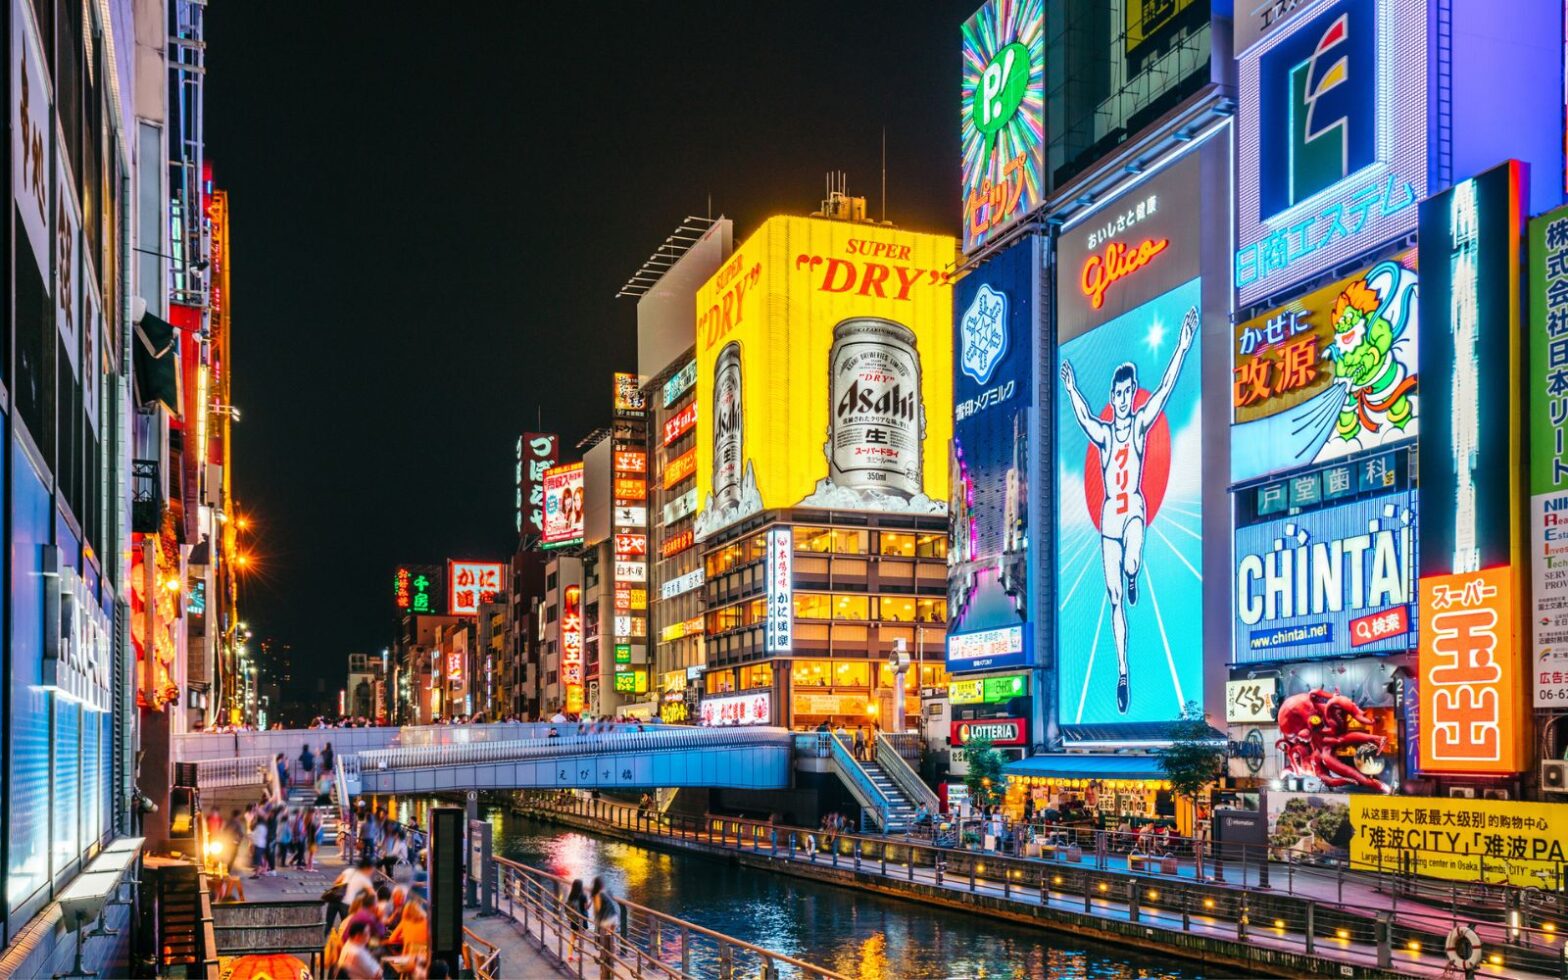 Le Japon s’apprête à ouvrir son premier casino